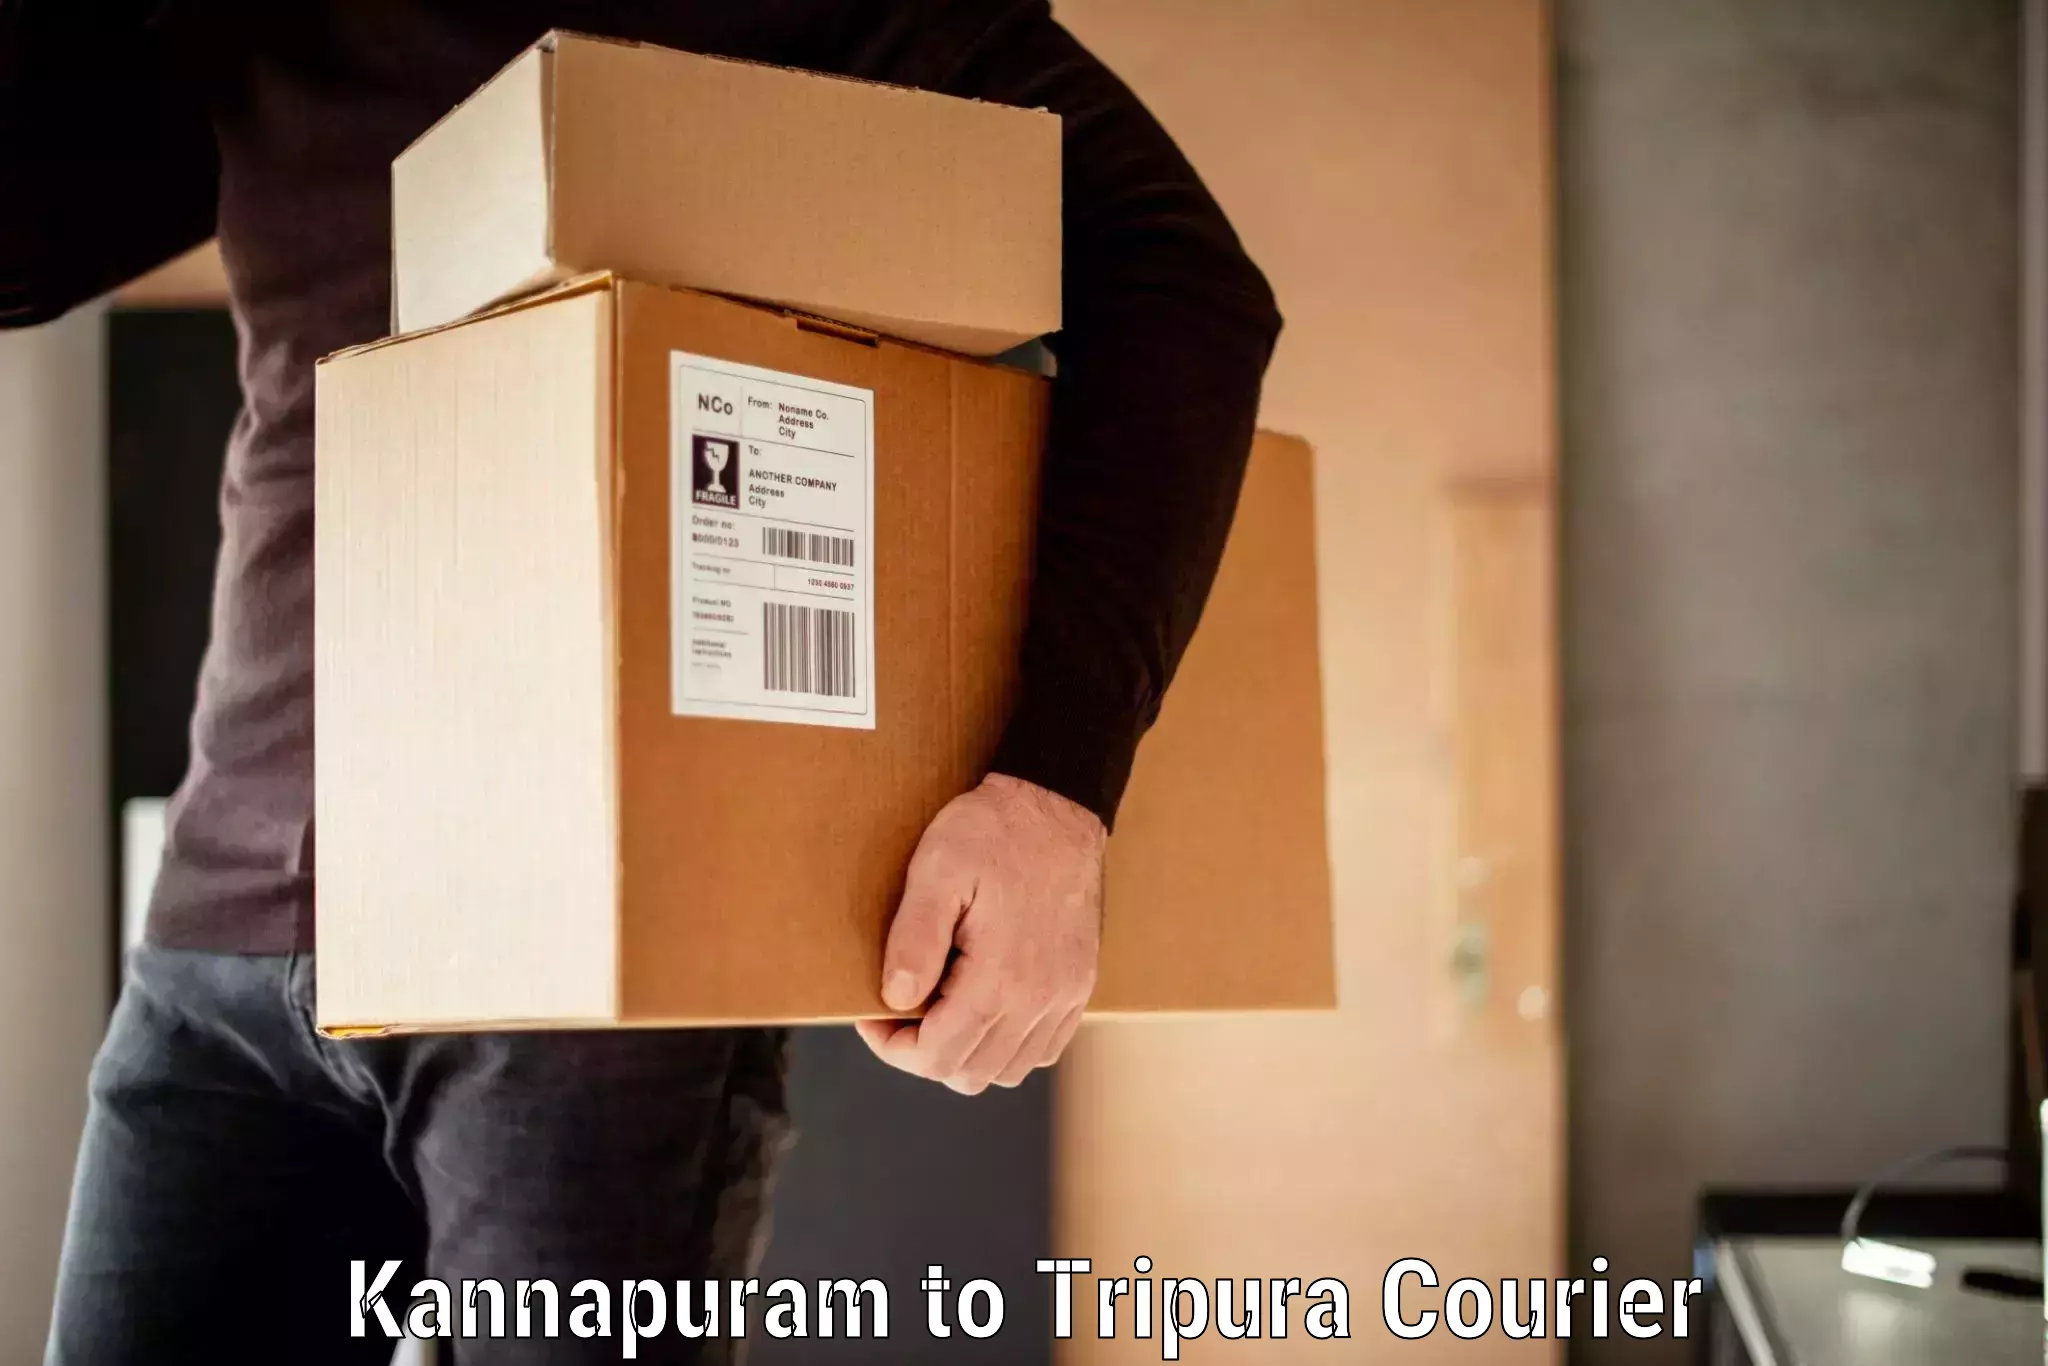 Baggage transport logistics Kannapuram to Kailashahar